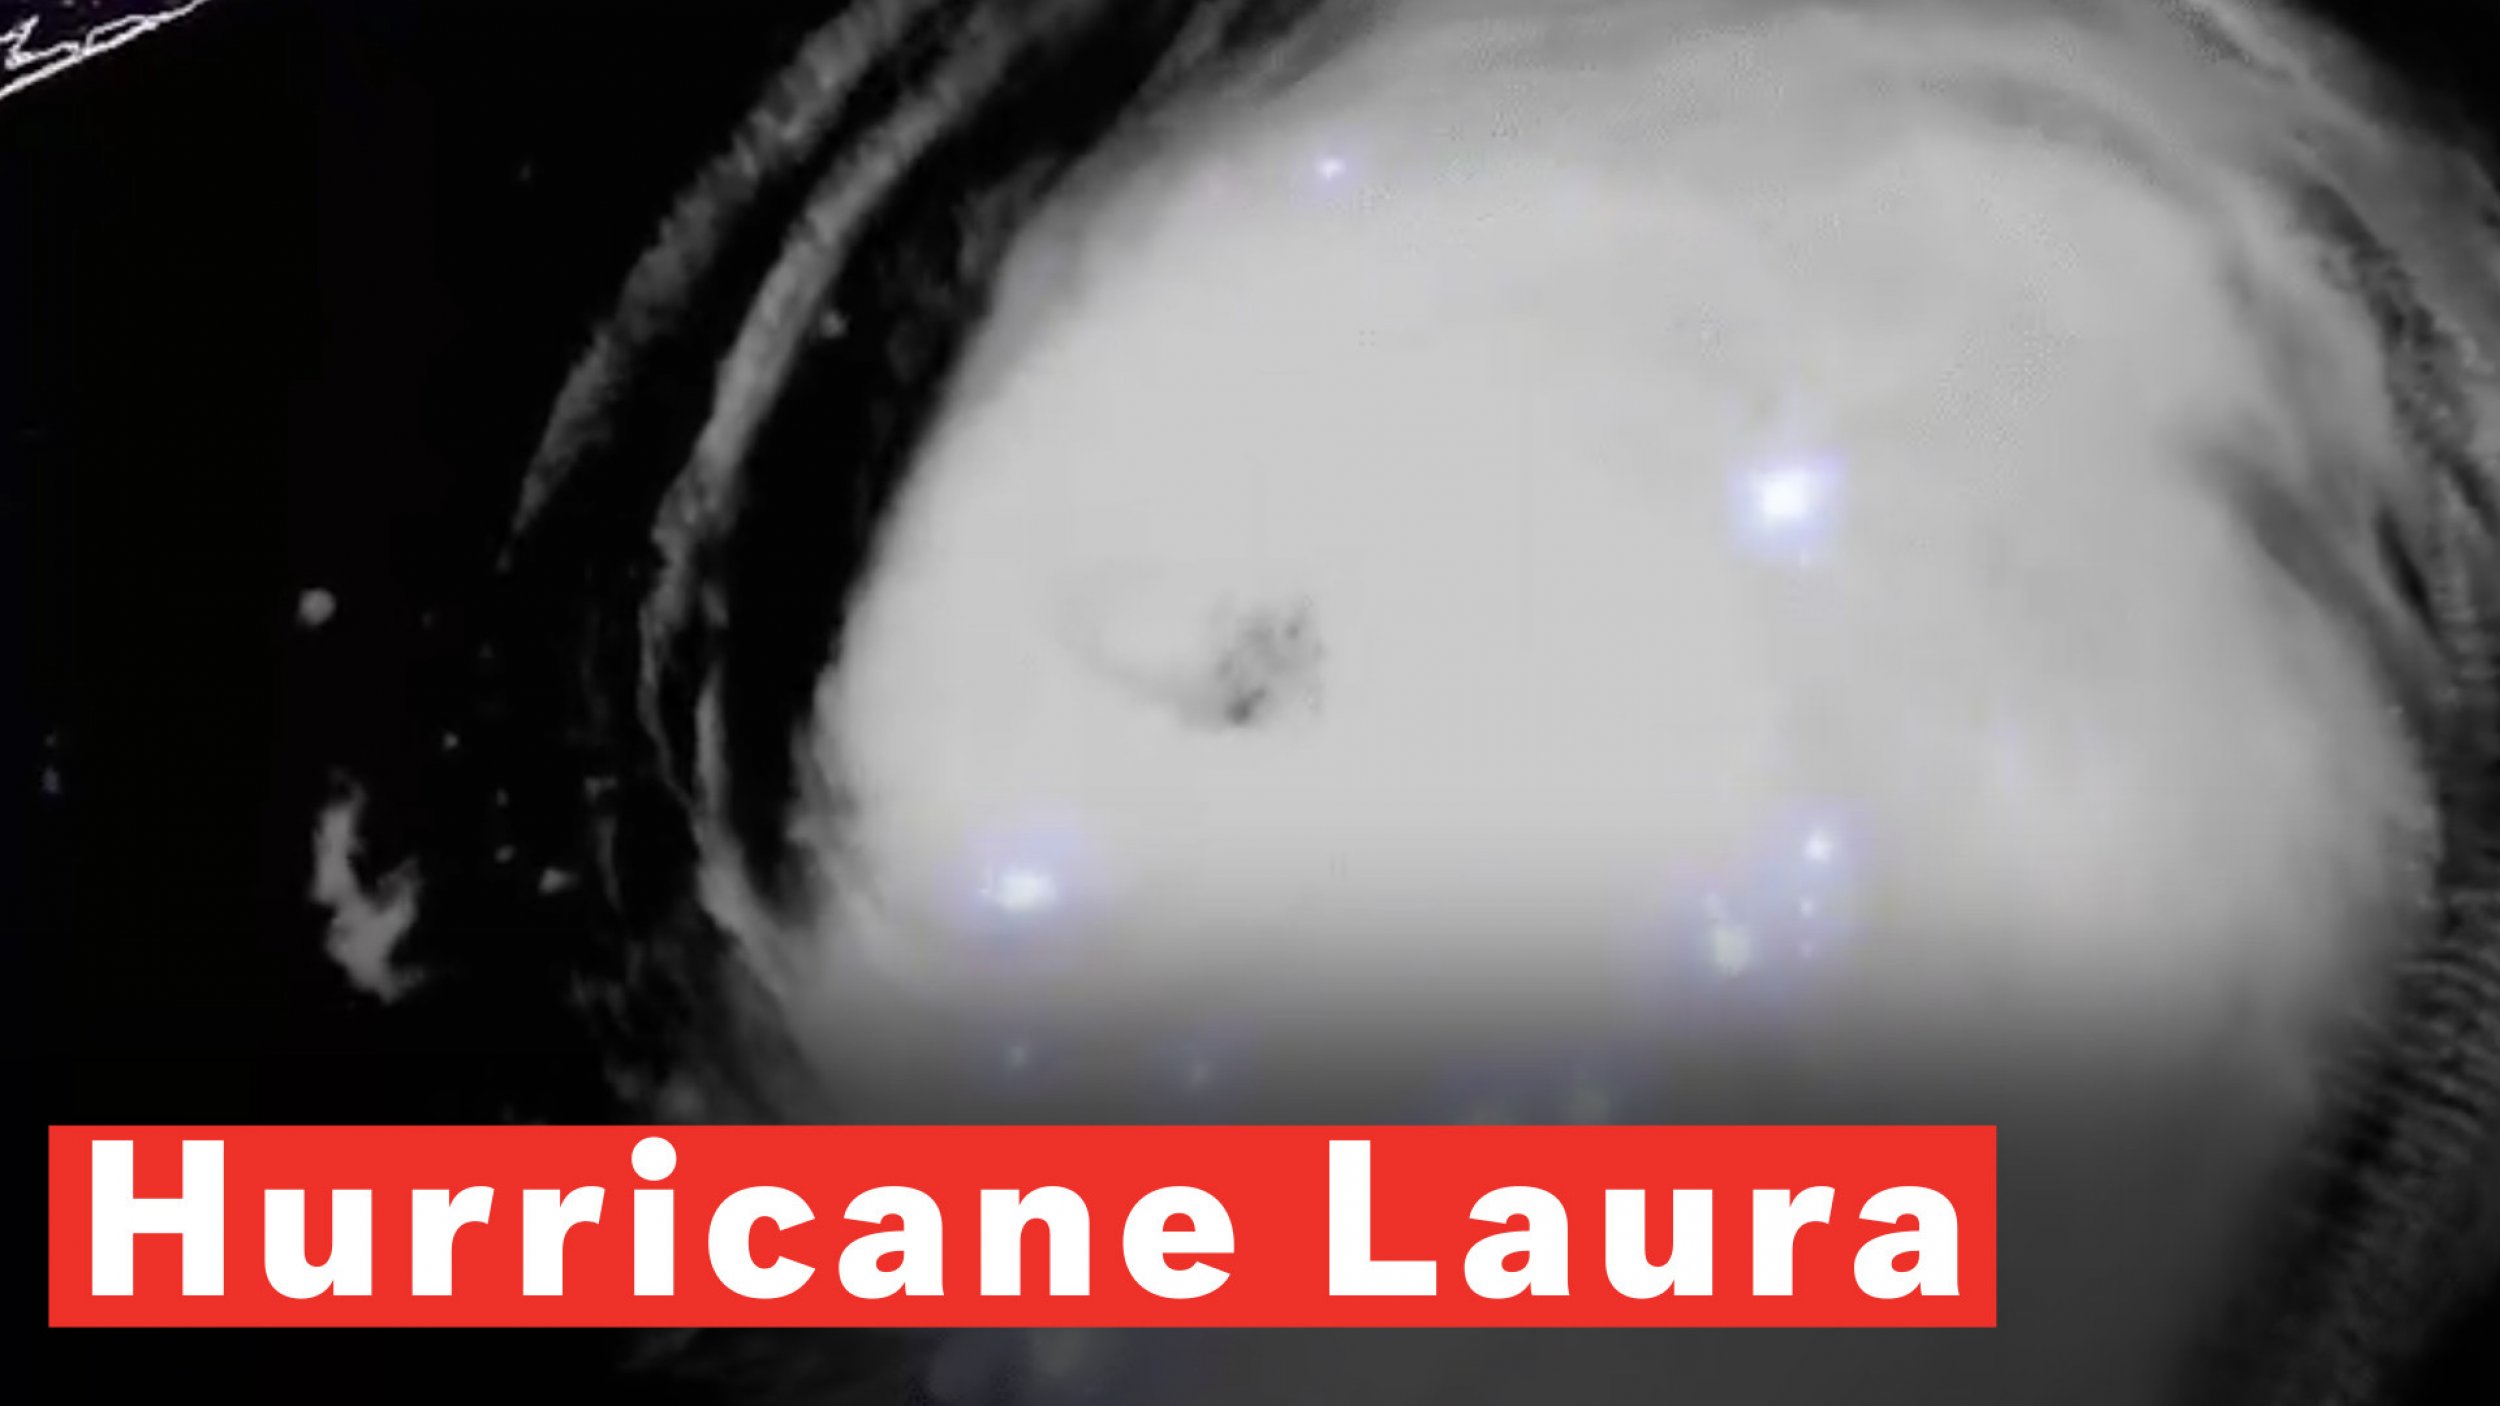 Hurricane Laura, Now Category 4 Storm, Churns In Gulf Of Mexico Towards Louisiana-Texas Coast